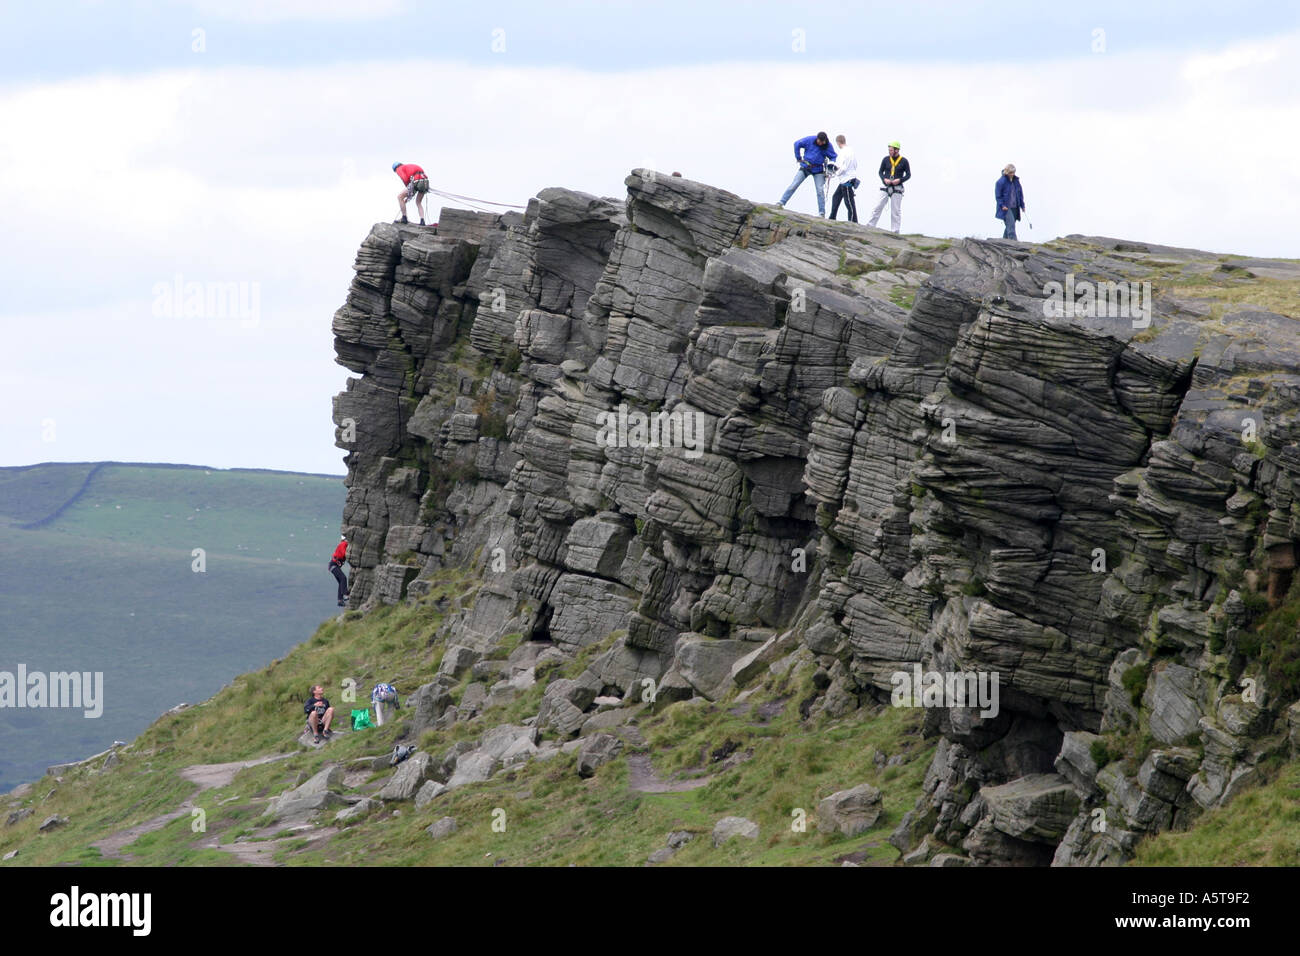 Alpinistes sur Windgather rochers sur le côté est du Peak District, Derbyshire, Angleterre. L'homme au haut des rochers est l'assurage d'un grimpeur sur le chemin vers le haut. Banque D'Images